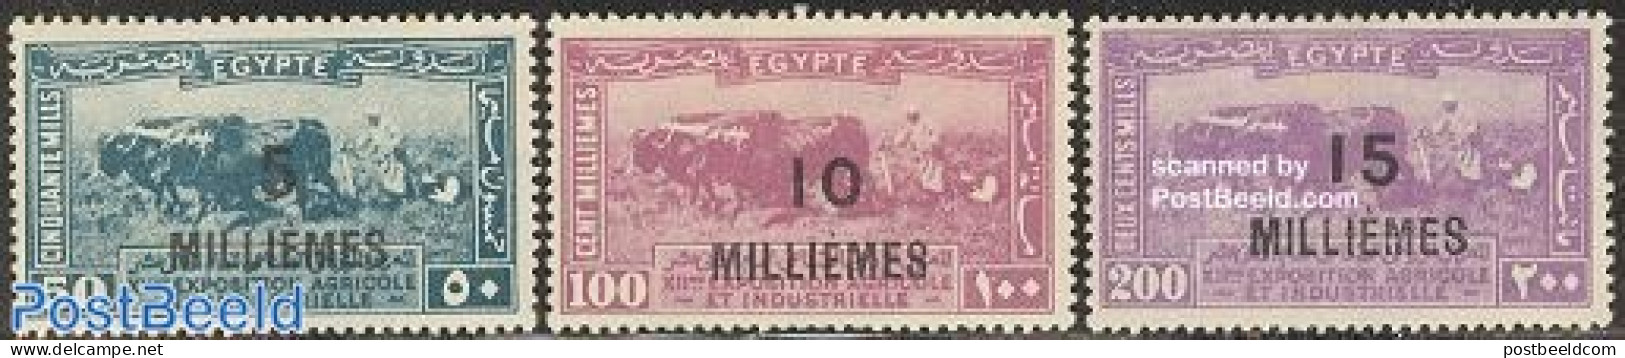 Egypt (Kingdom) 1926 Overprints 3v, Unused (hinged), Nature - Cattle - Nuevos